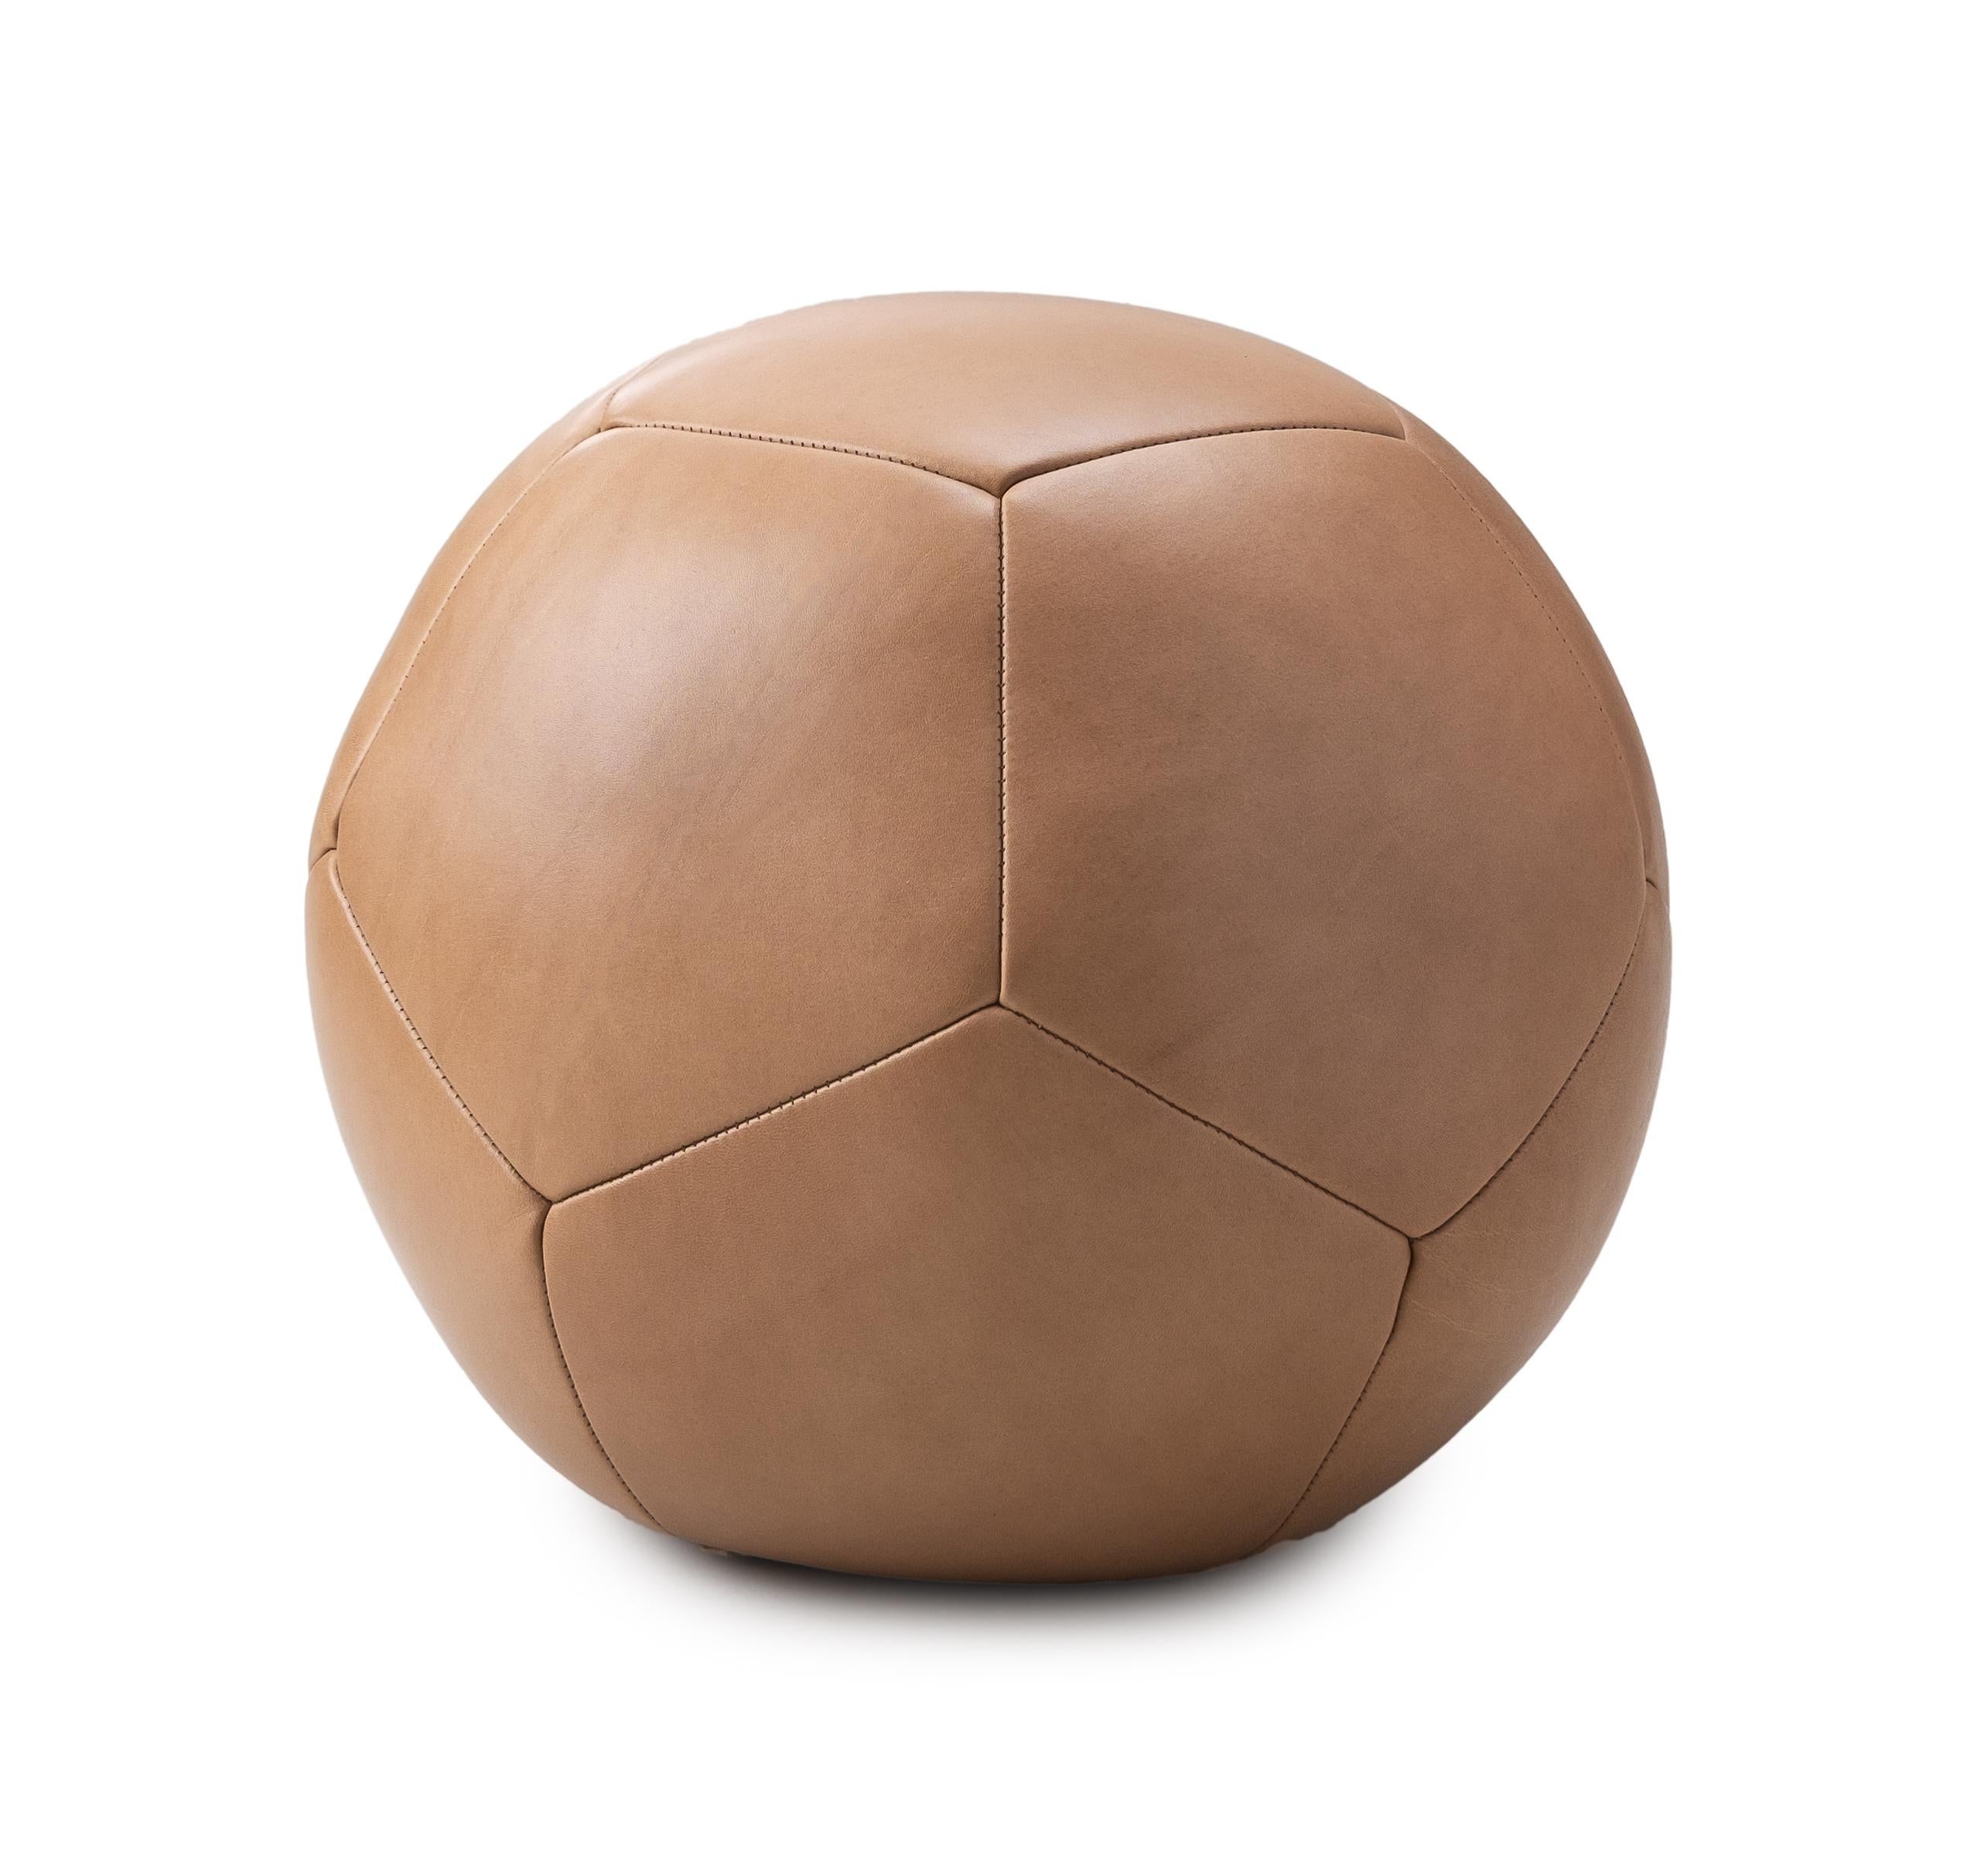 Der runde, skulpturale und einzigartig abstrakte Ball Ottoman ist aus geschmeidigem europäischem Leder gefertigt und hat die klarste Silhouette unserer Ottoman-Kollektion.
Unsere Ottomane sind von Hand mit komprimiertem Schaumstoff gefüllt und mit